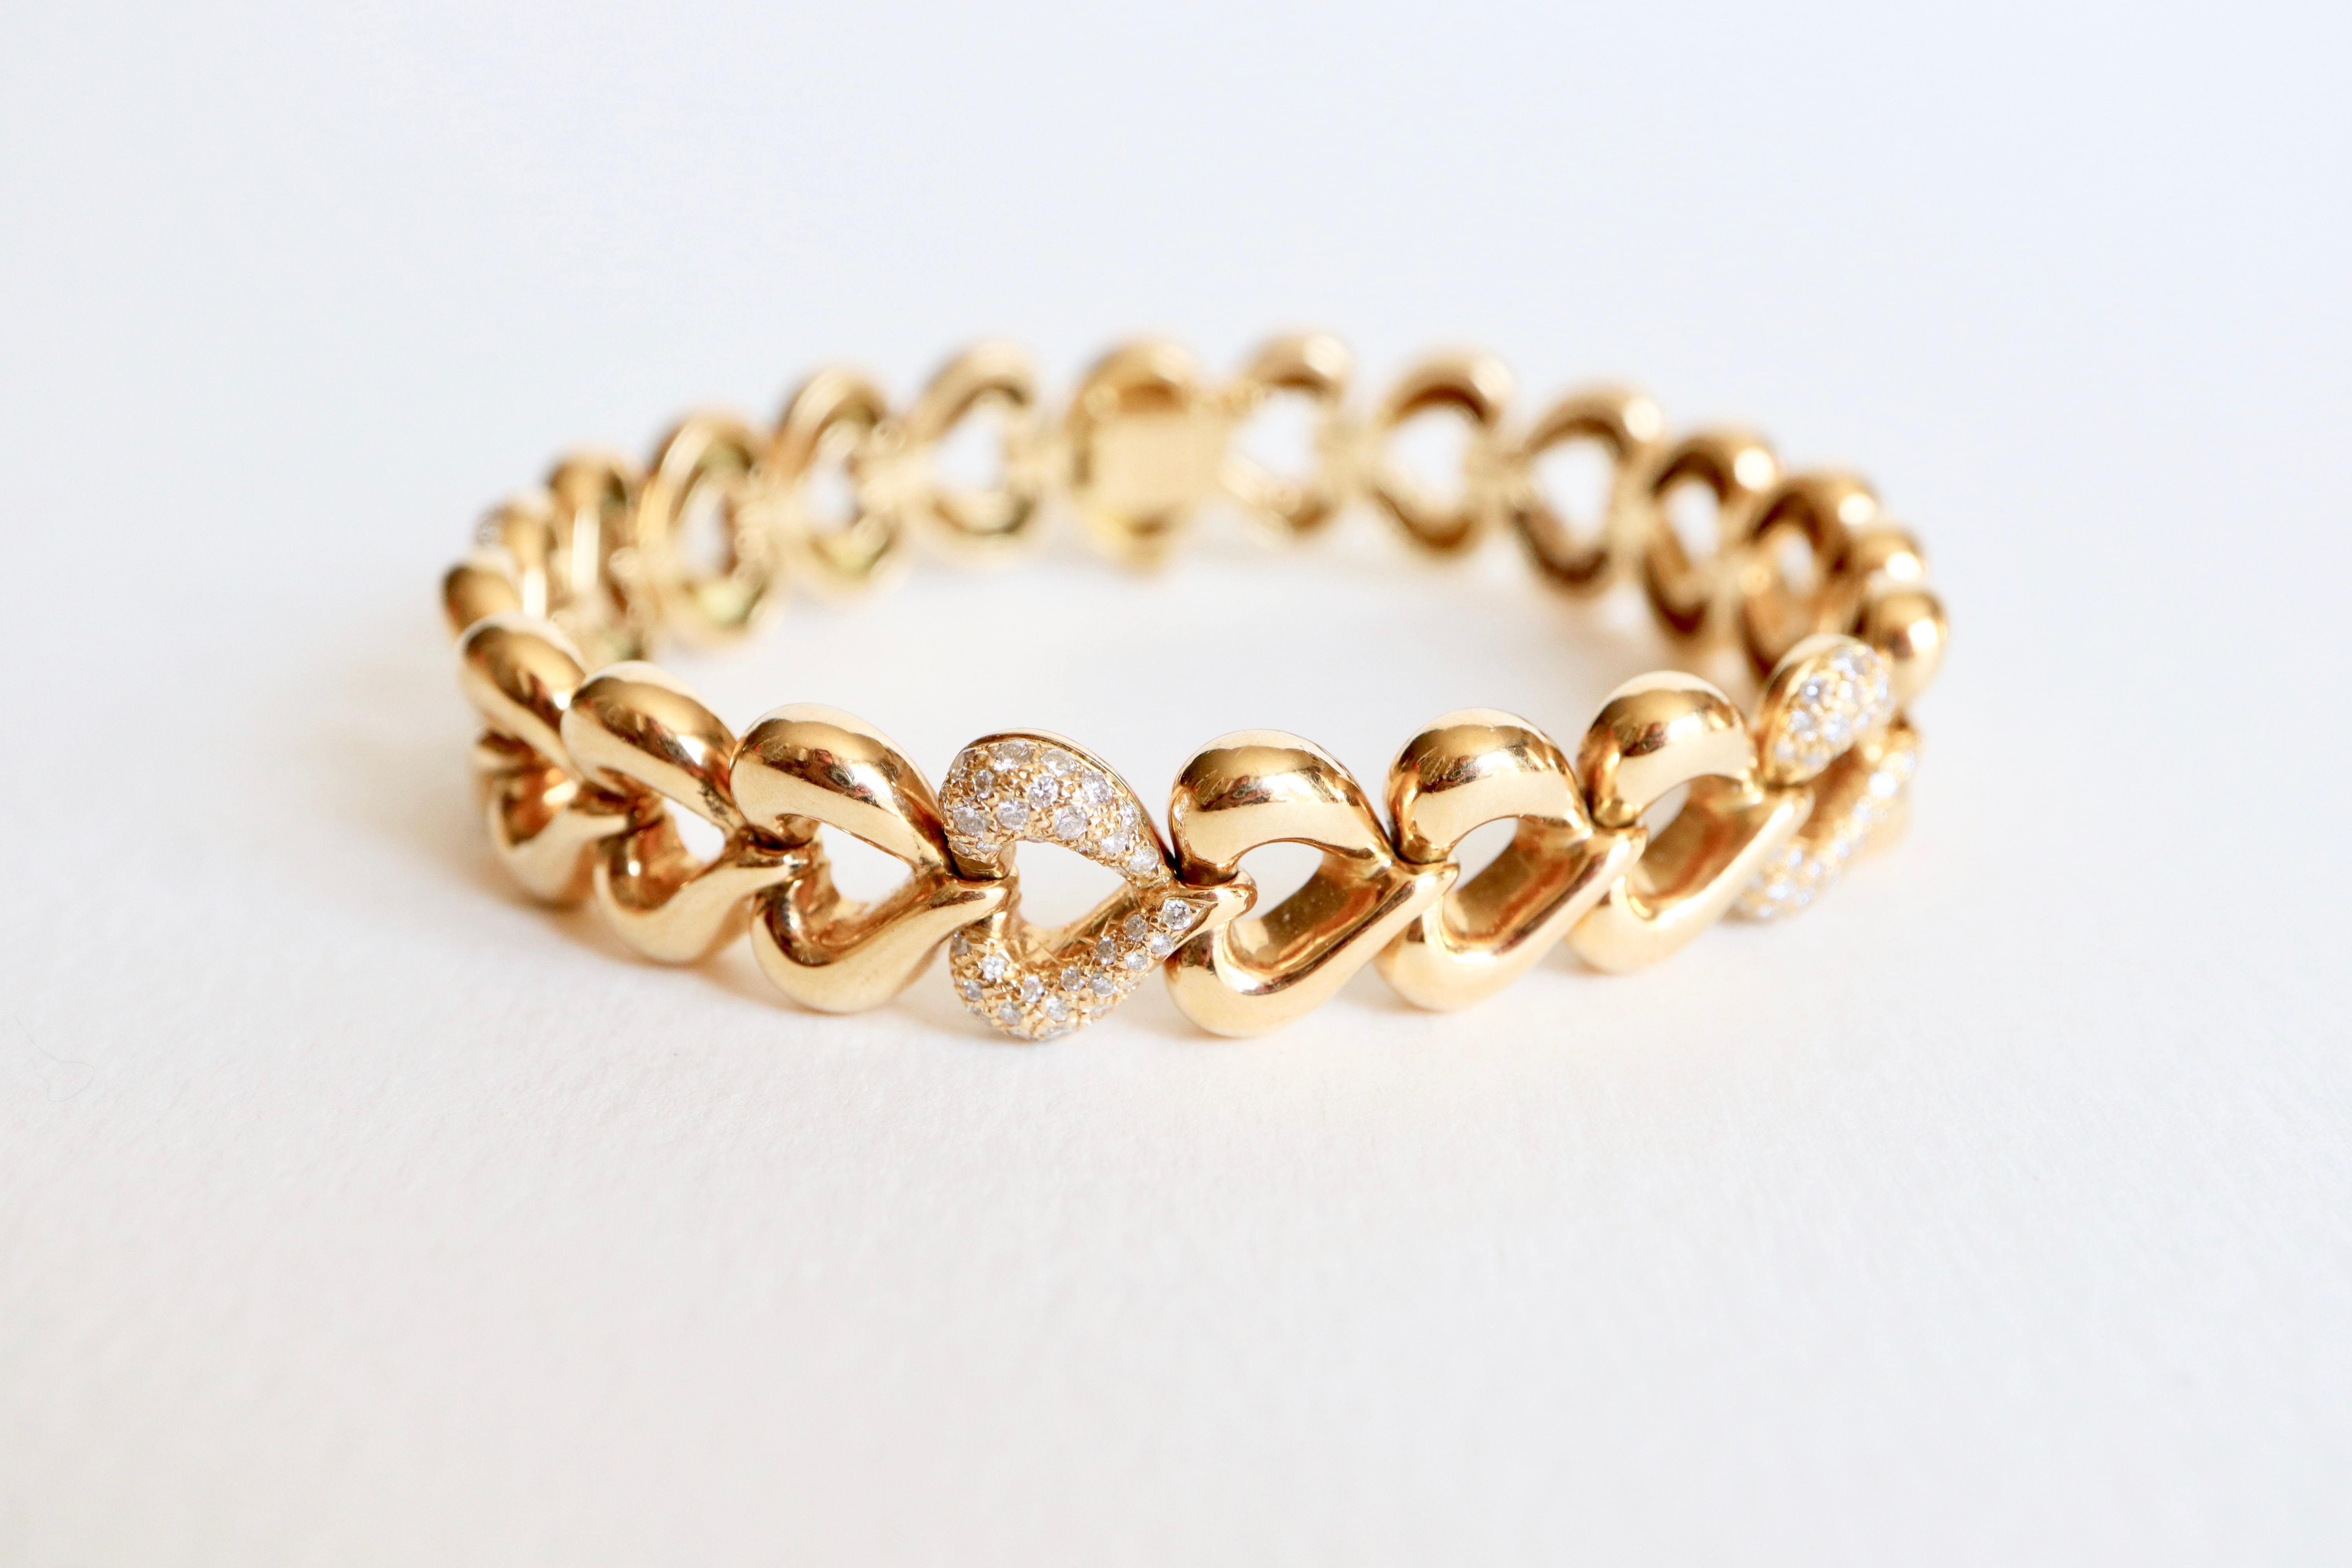 VAN CLEEF & ARPELS Bracelet en forme de cœur articulé en or jaune 18 carats et diamants.
Il y a 22 liens du cœur. Cinq des mailles du cœur sont pavées de diamants.
Longueur : 18 cm Largeur : 1,3 cm
Fermeture à languette avec sécurité. 
Le bracelet